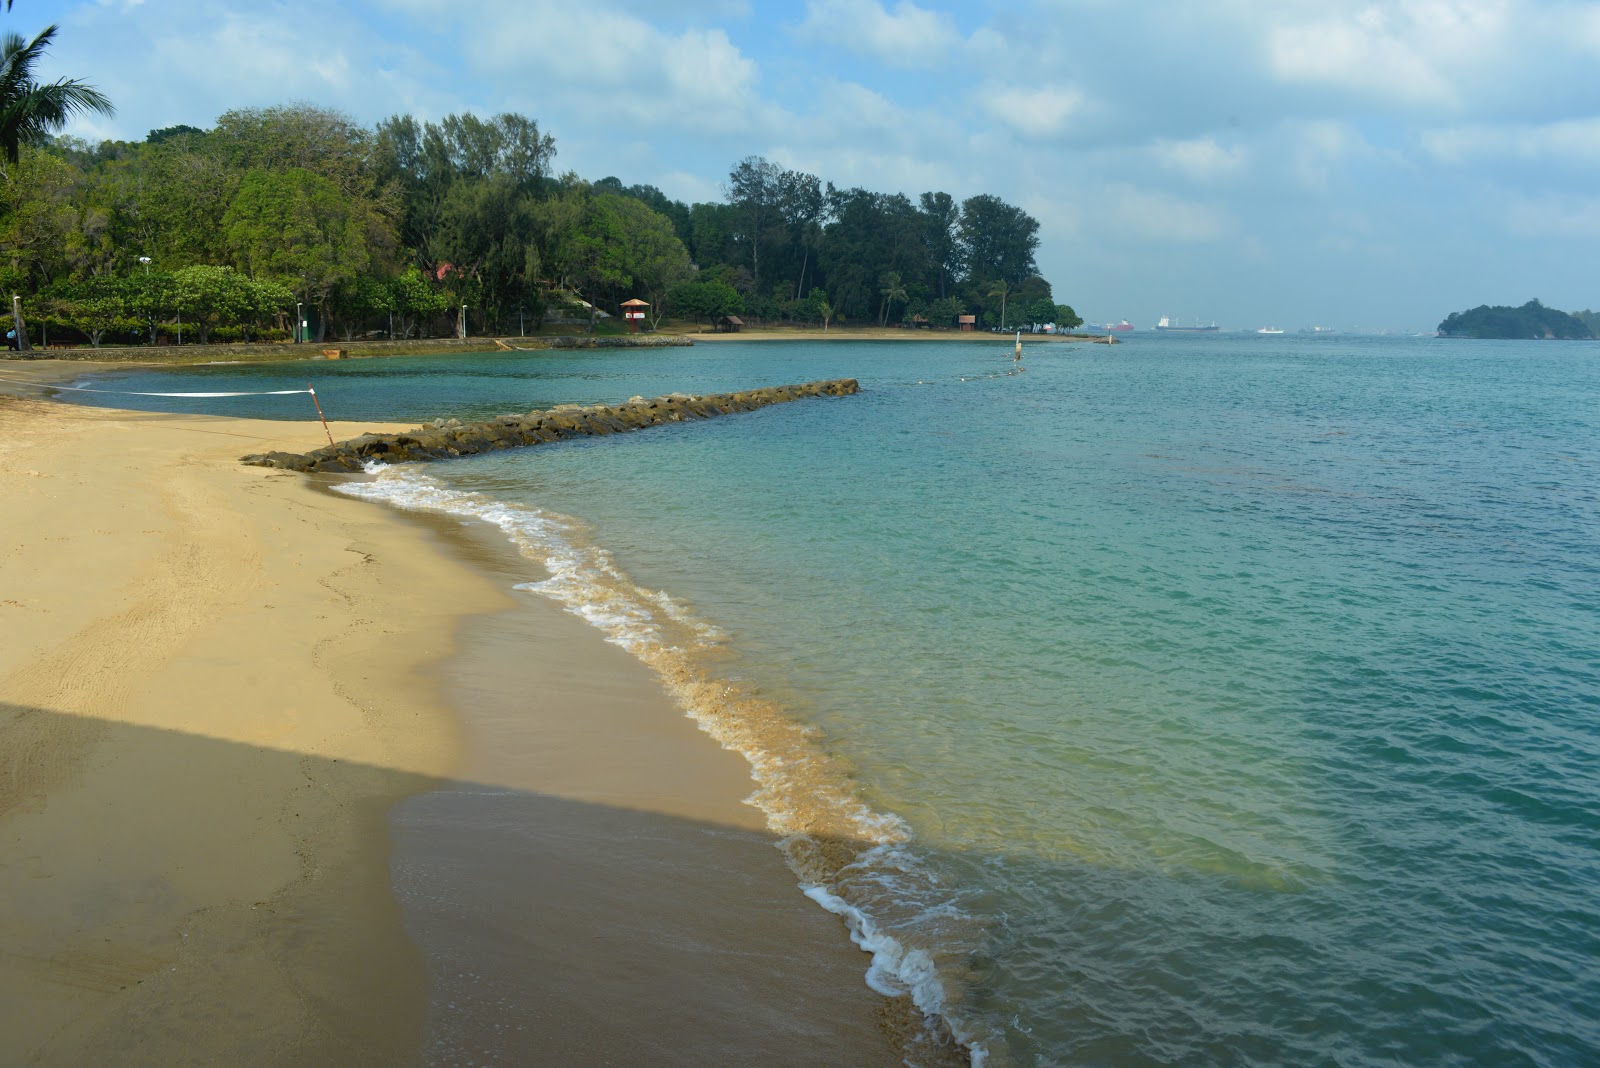 Zdjęcie St John's Island Beach - popularne miejsce wśród znawców relaksu